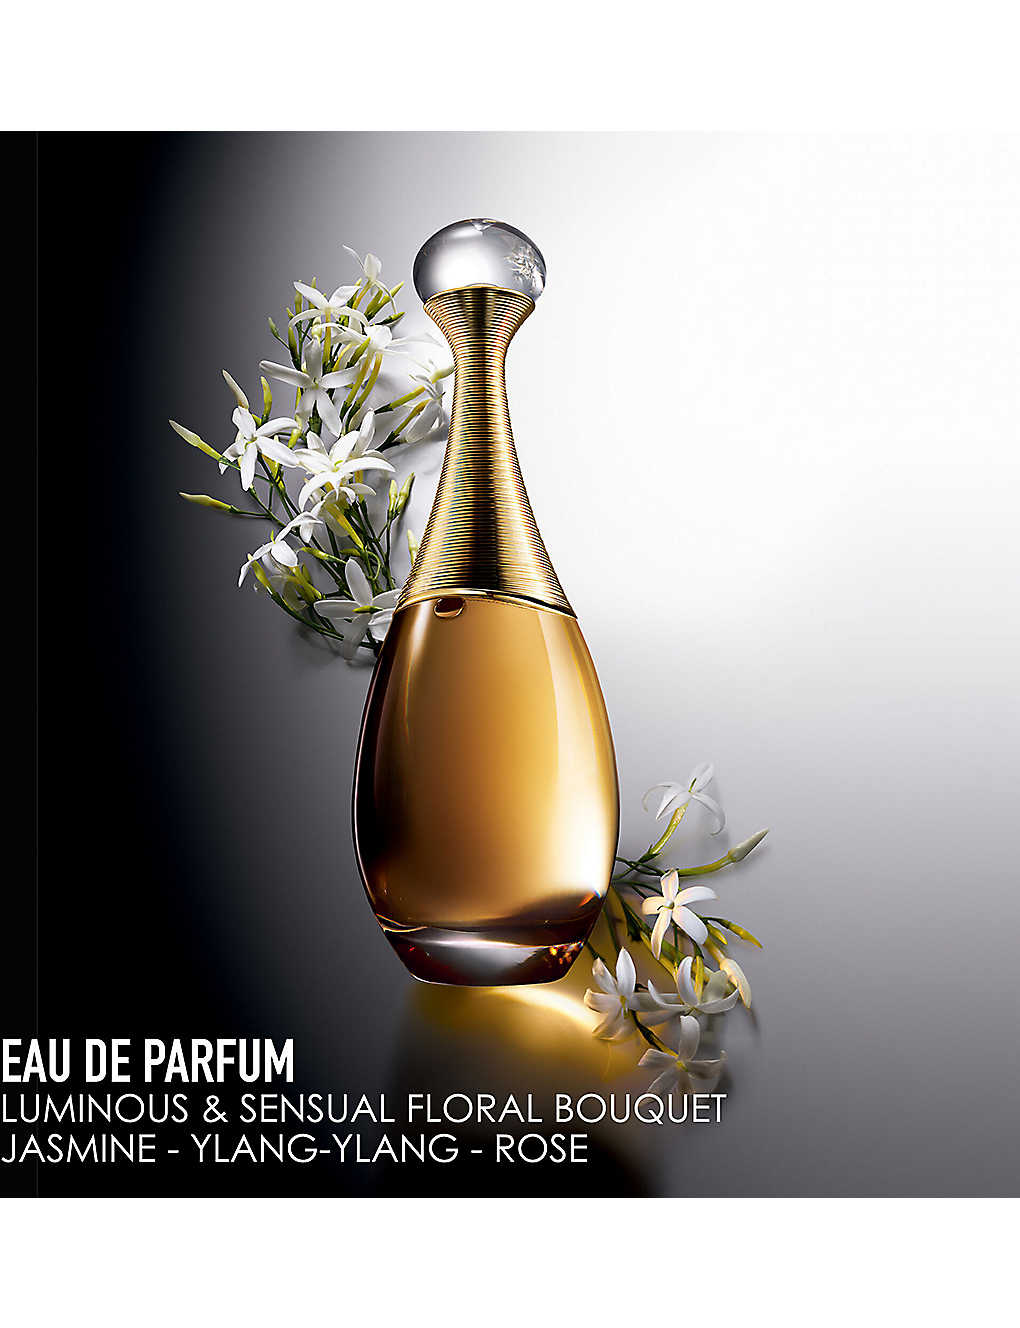 Dior Limited-Edition J'adore Eau de Parfum